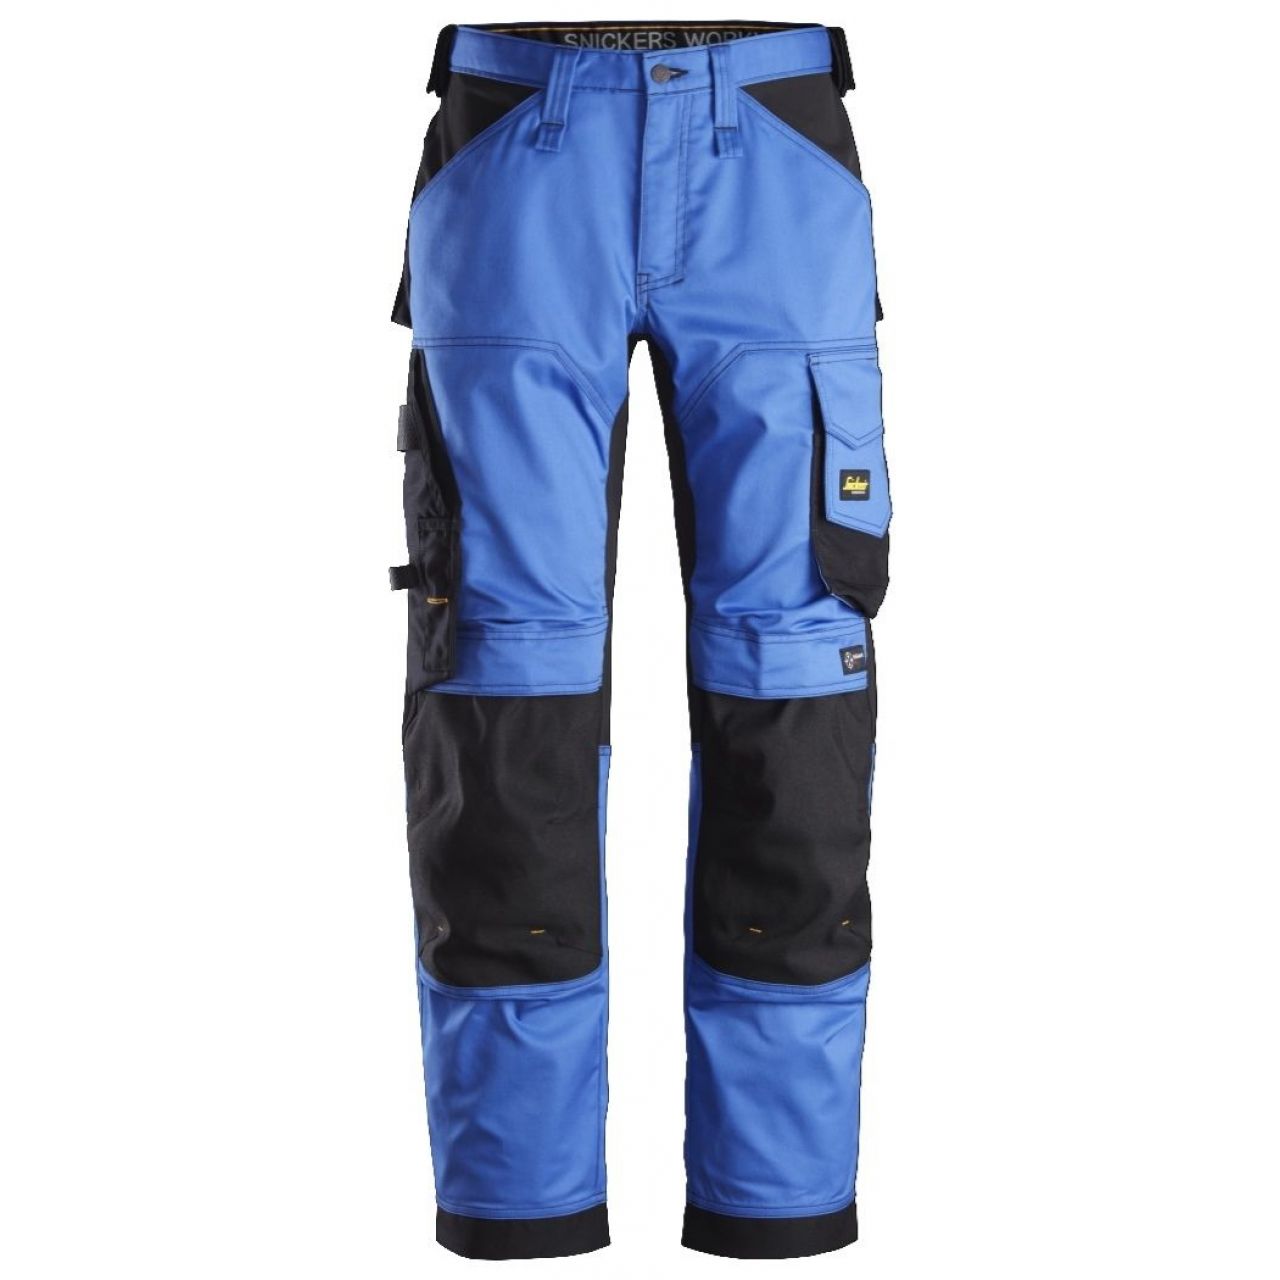 Pantalon elastico ajuste holgado AllroundWork azul-negro talla 108